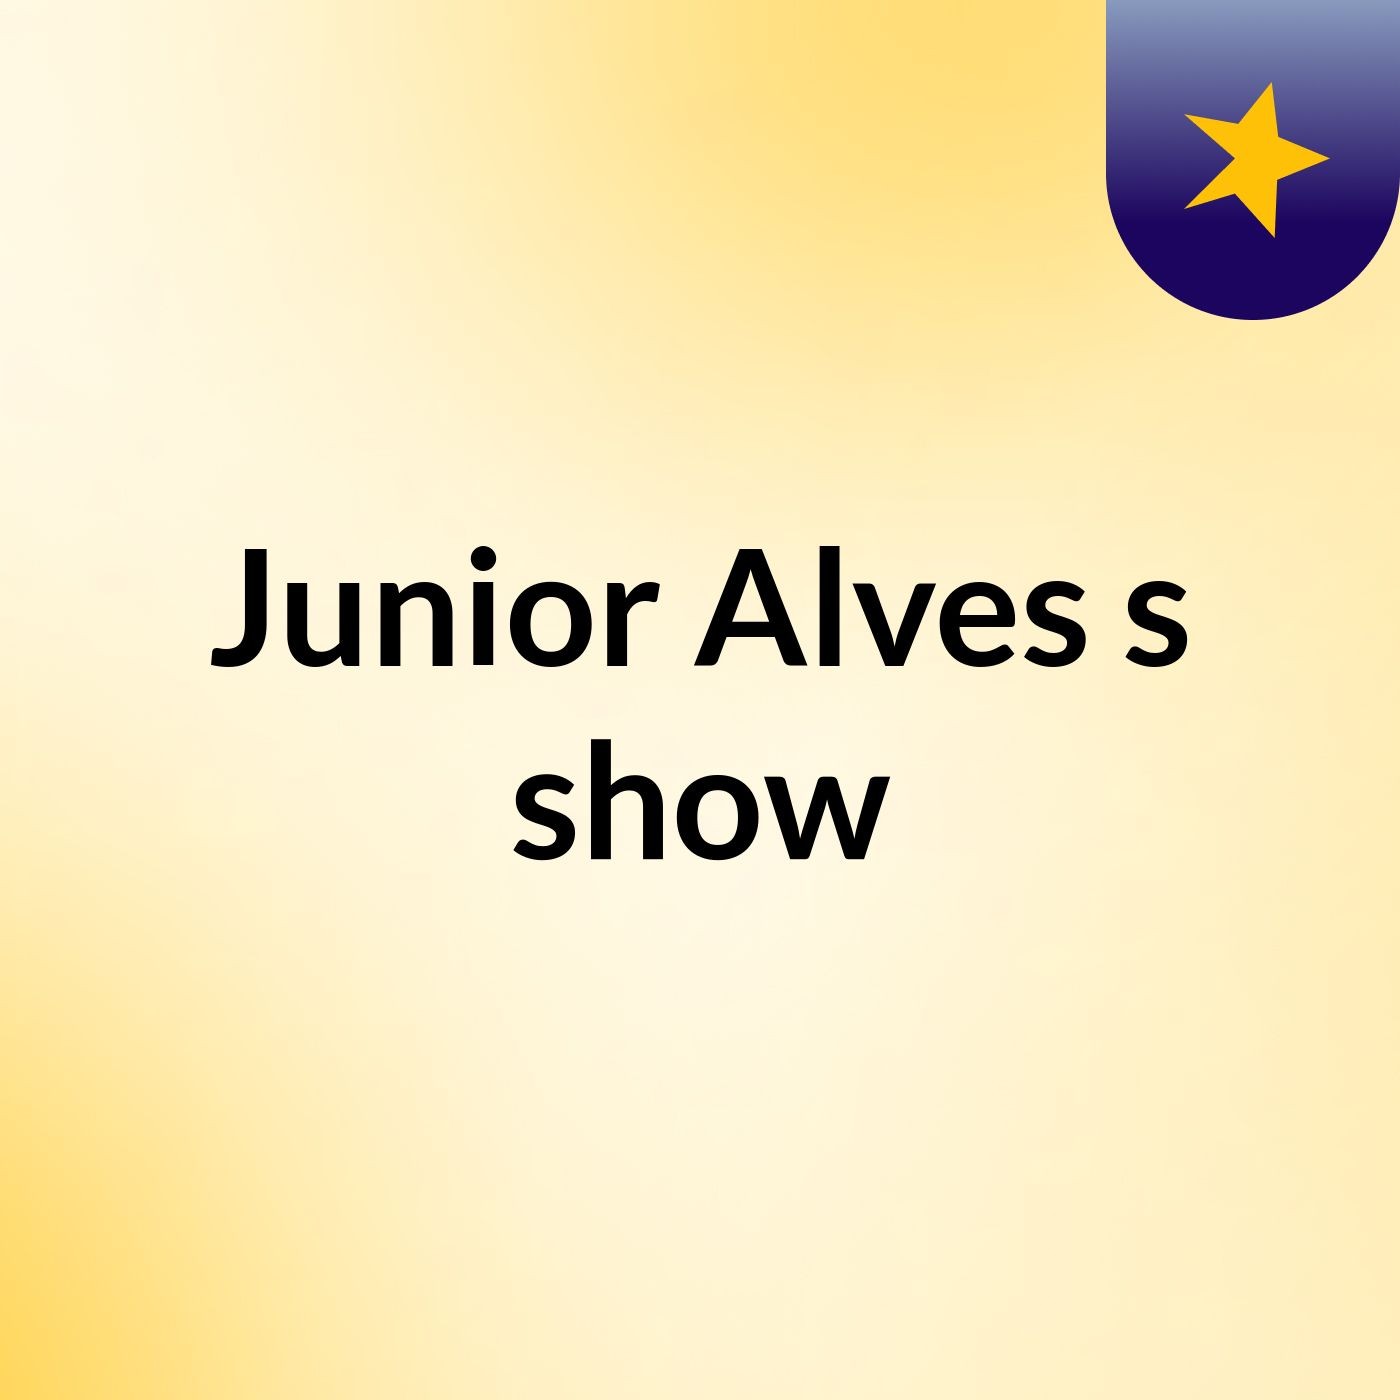 Junior Alves's show